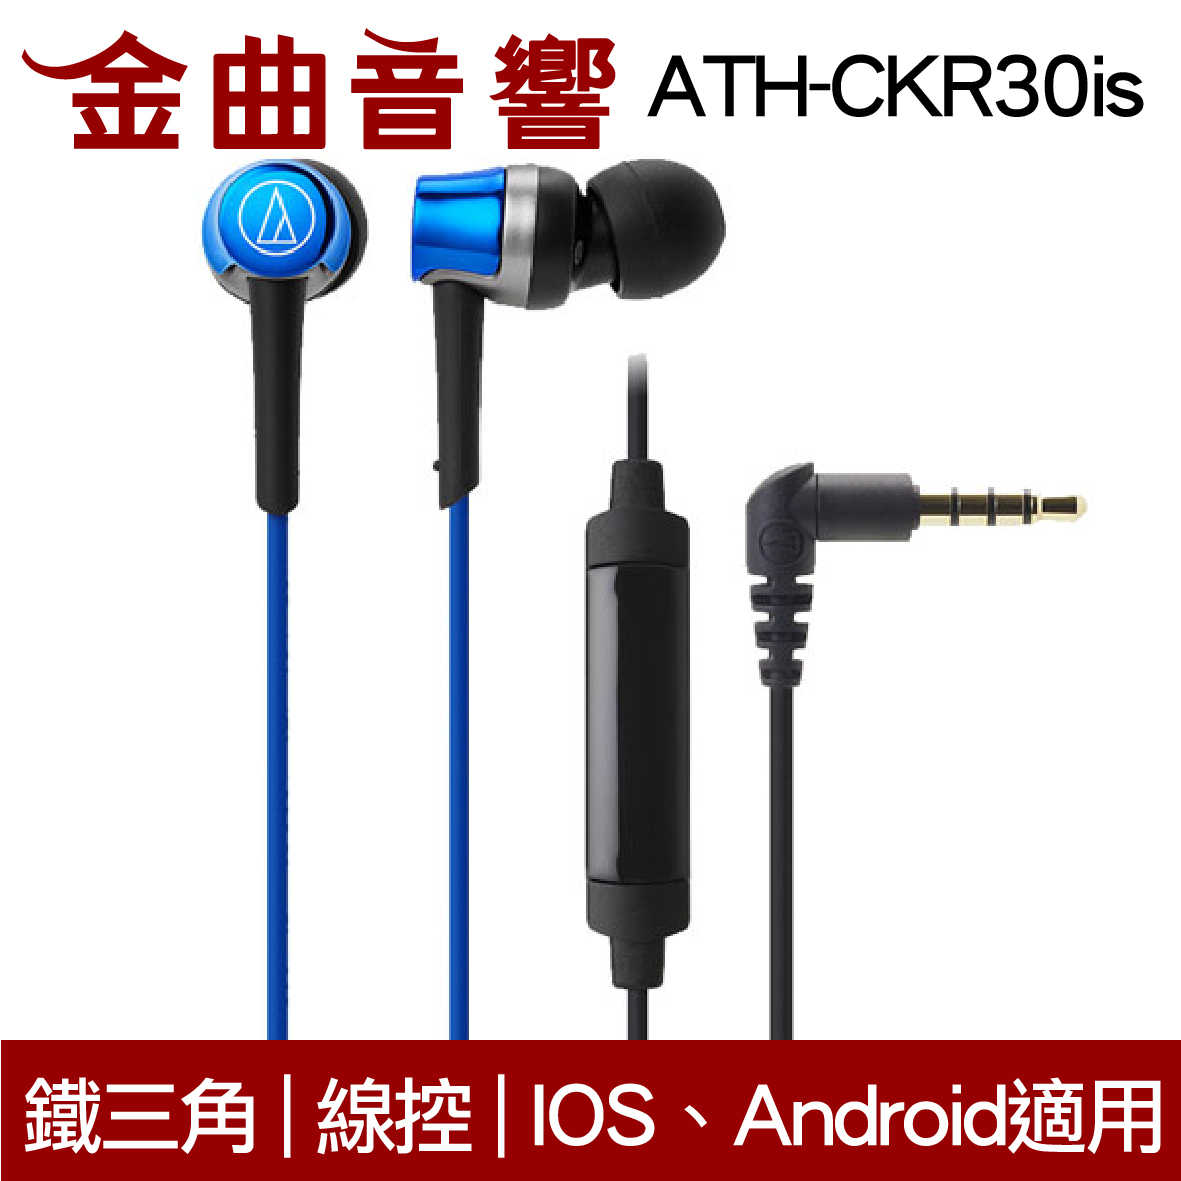 鐵三角 ATH-CKR30is  粉色 線控式耳道式耳機 iOS 安卓適用 | 金曲音響